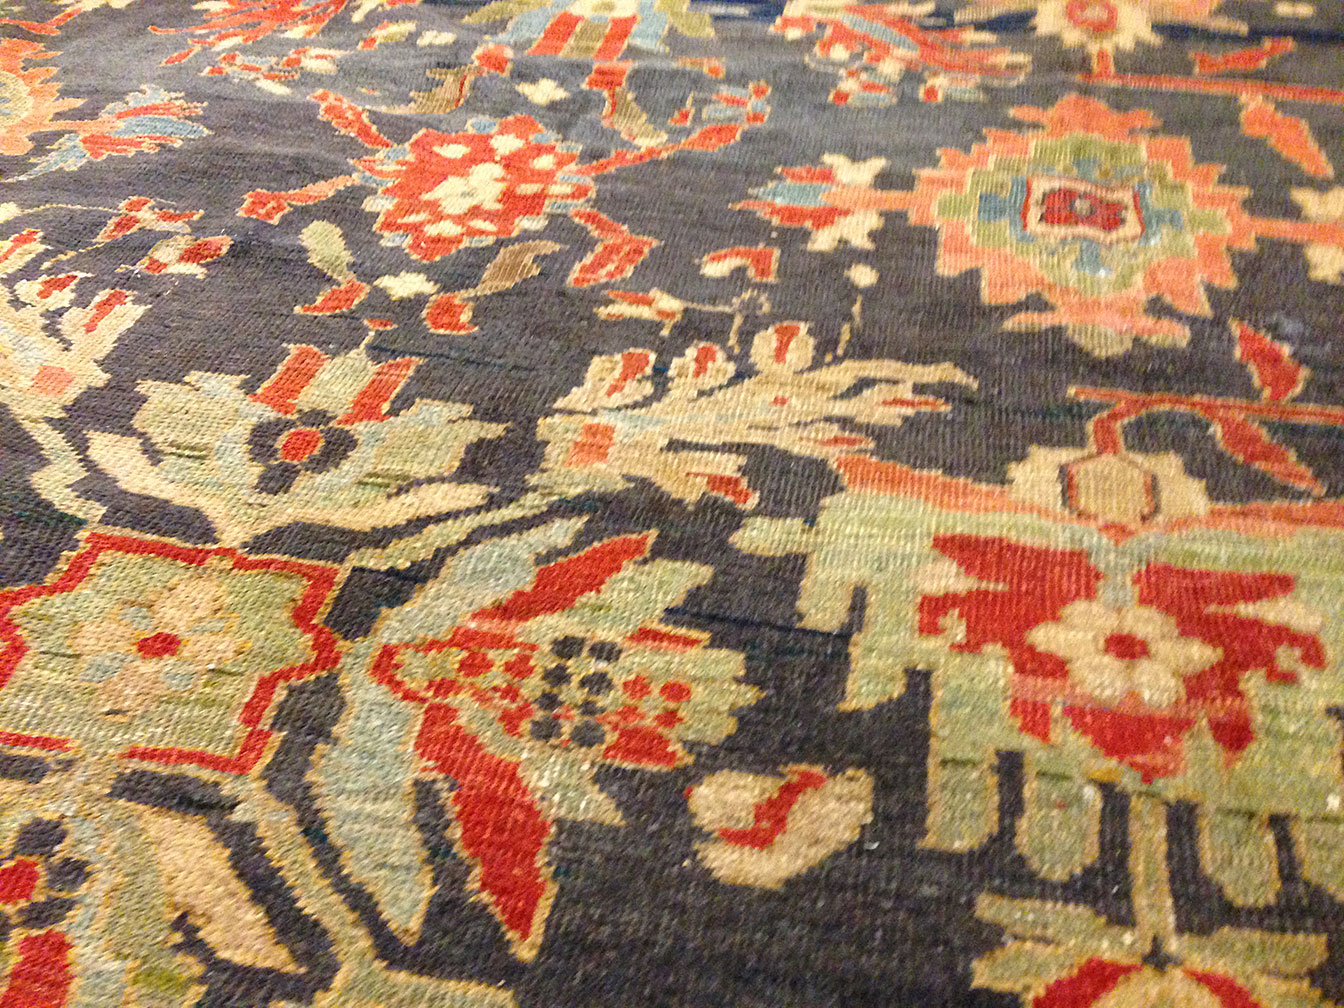 Antique sultan abad Carpet - # 9200